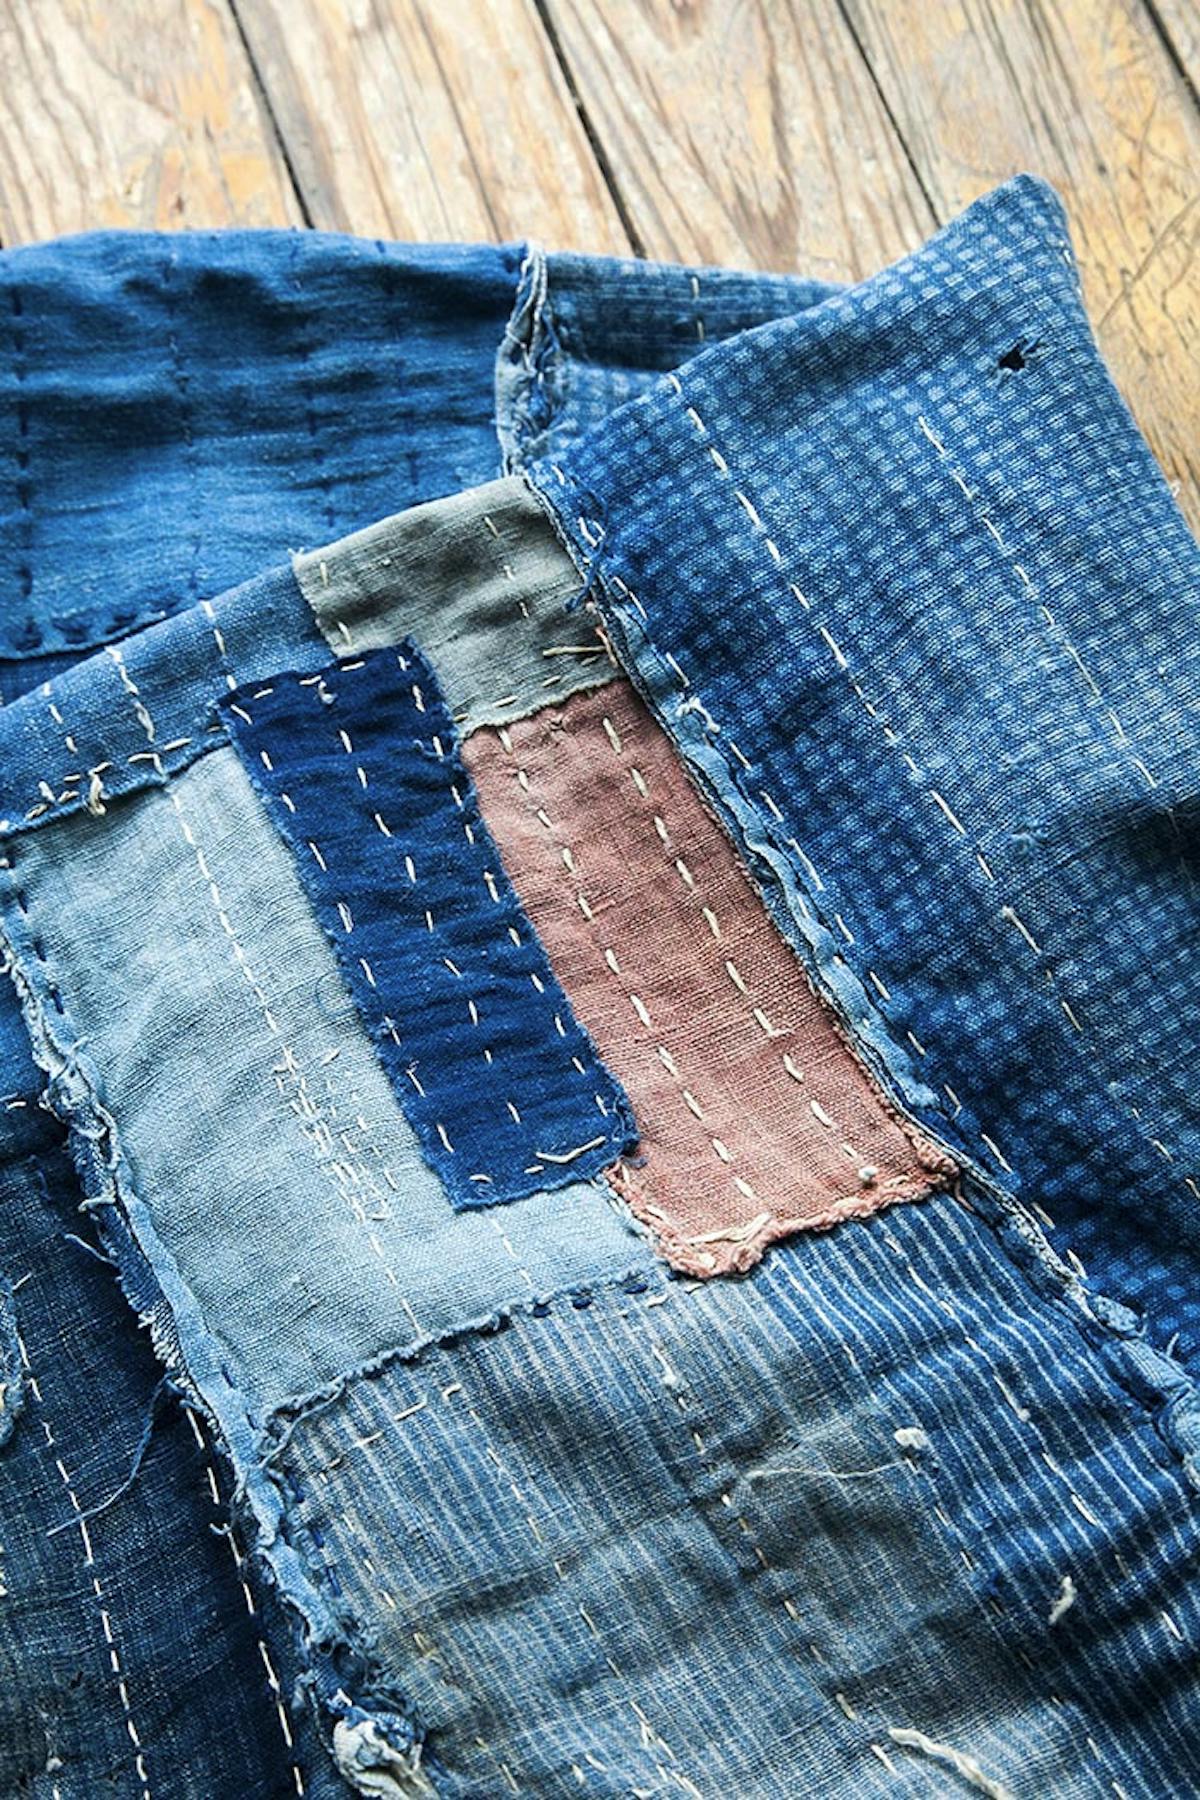  Tecnica di rammendo giapponese Sashiko utilizzata per riparare il jeans